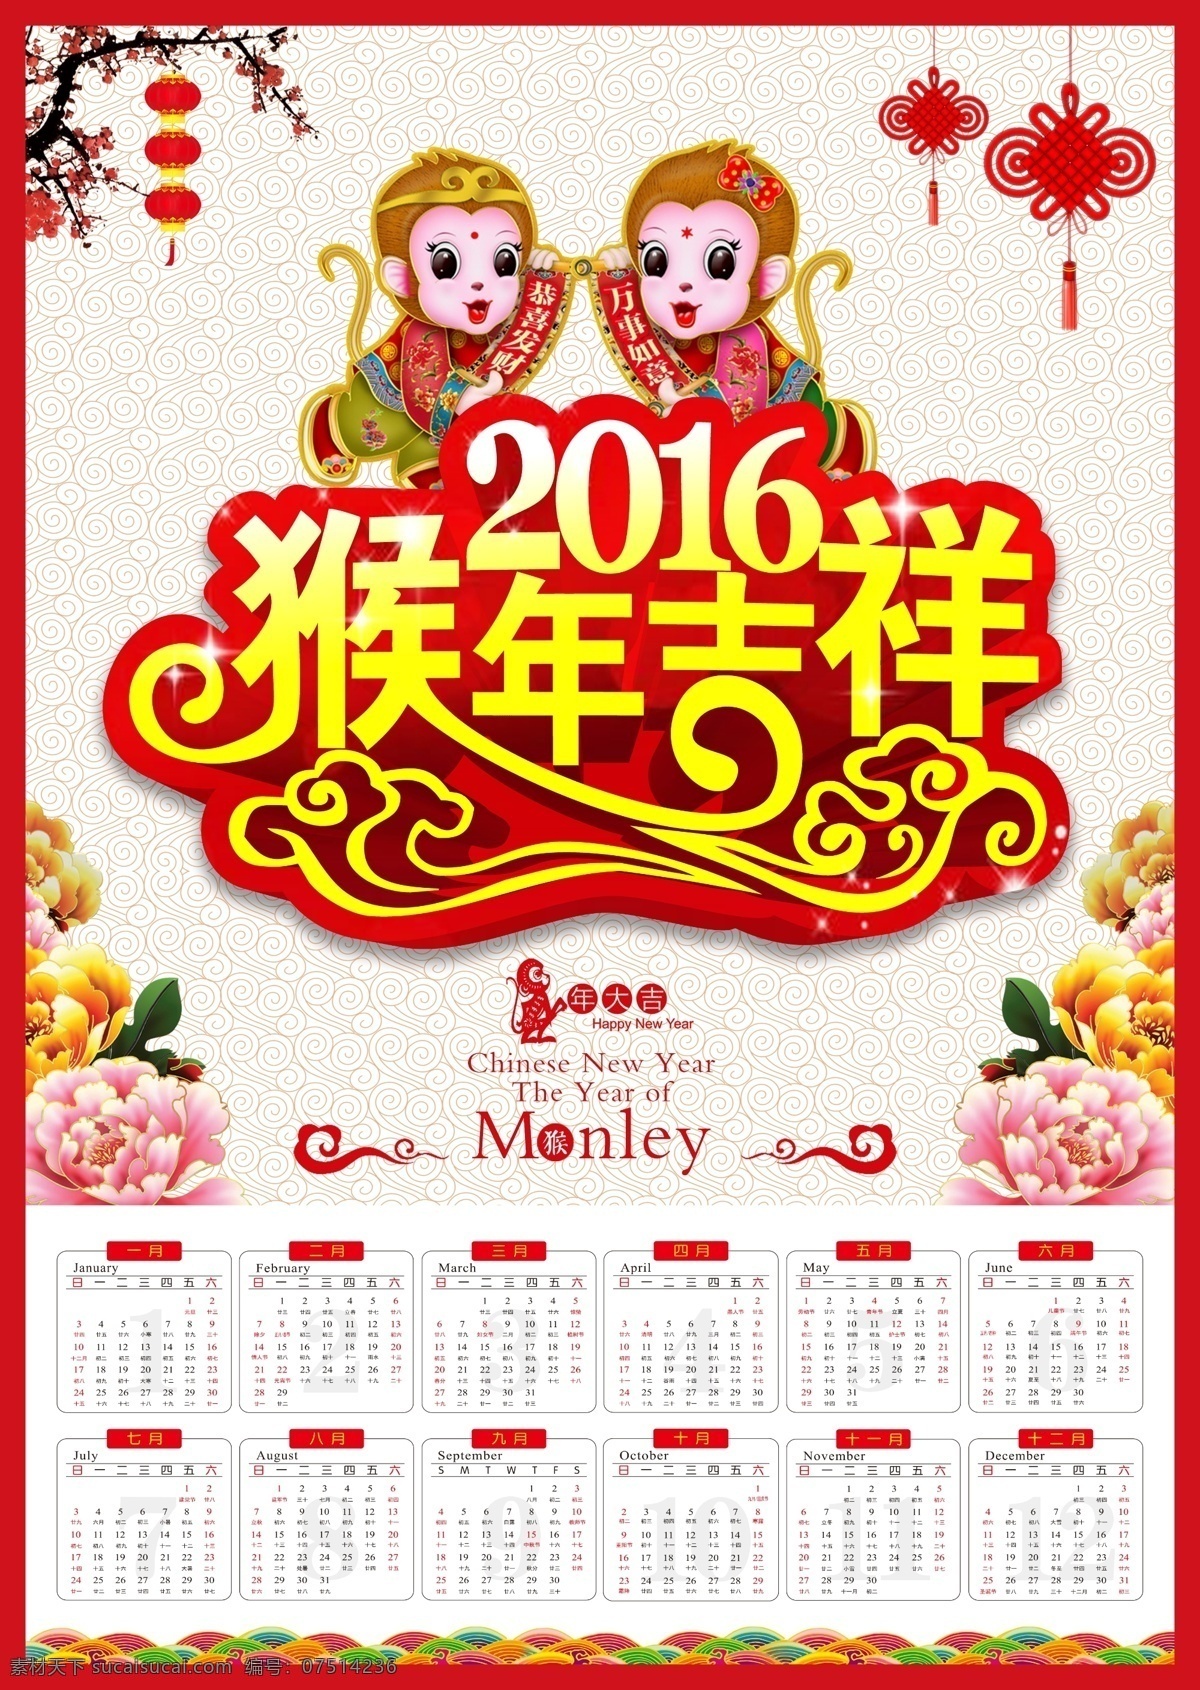 猴年年历 贺新年 花卉 新年 2016 2016年 猴年 挂历 年历 日历 2016年历 2016日历 猴年素材 猴子 猴 小猴 白色